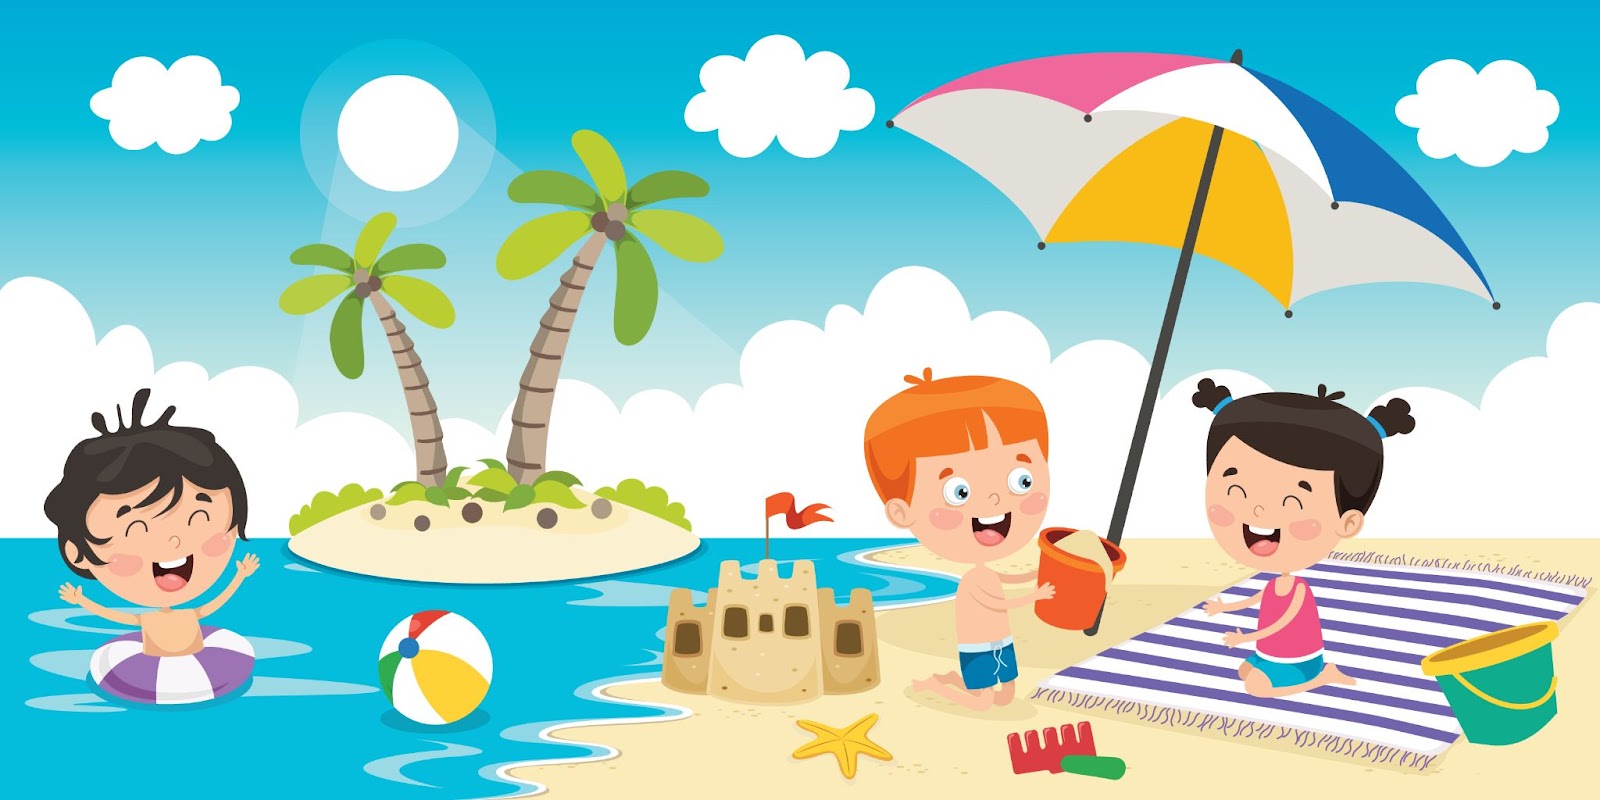 Bambini che giocano sulla spiaggia in estate, illustrazione, concetto di vacanza sicura per i bambini